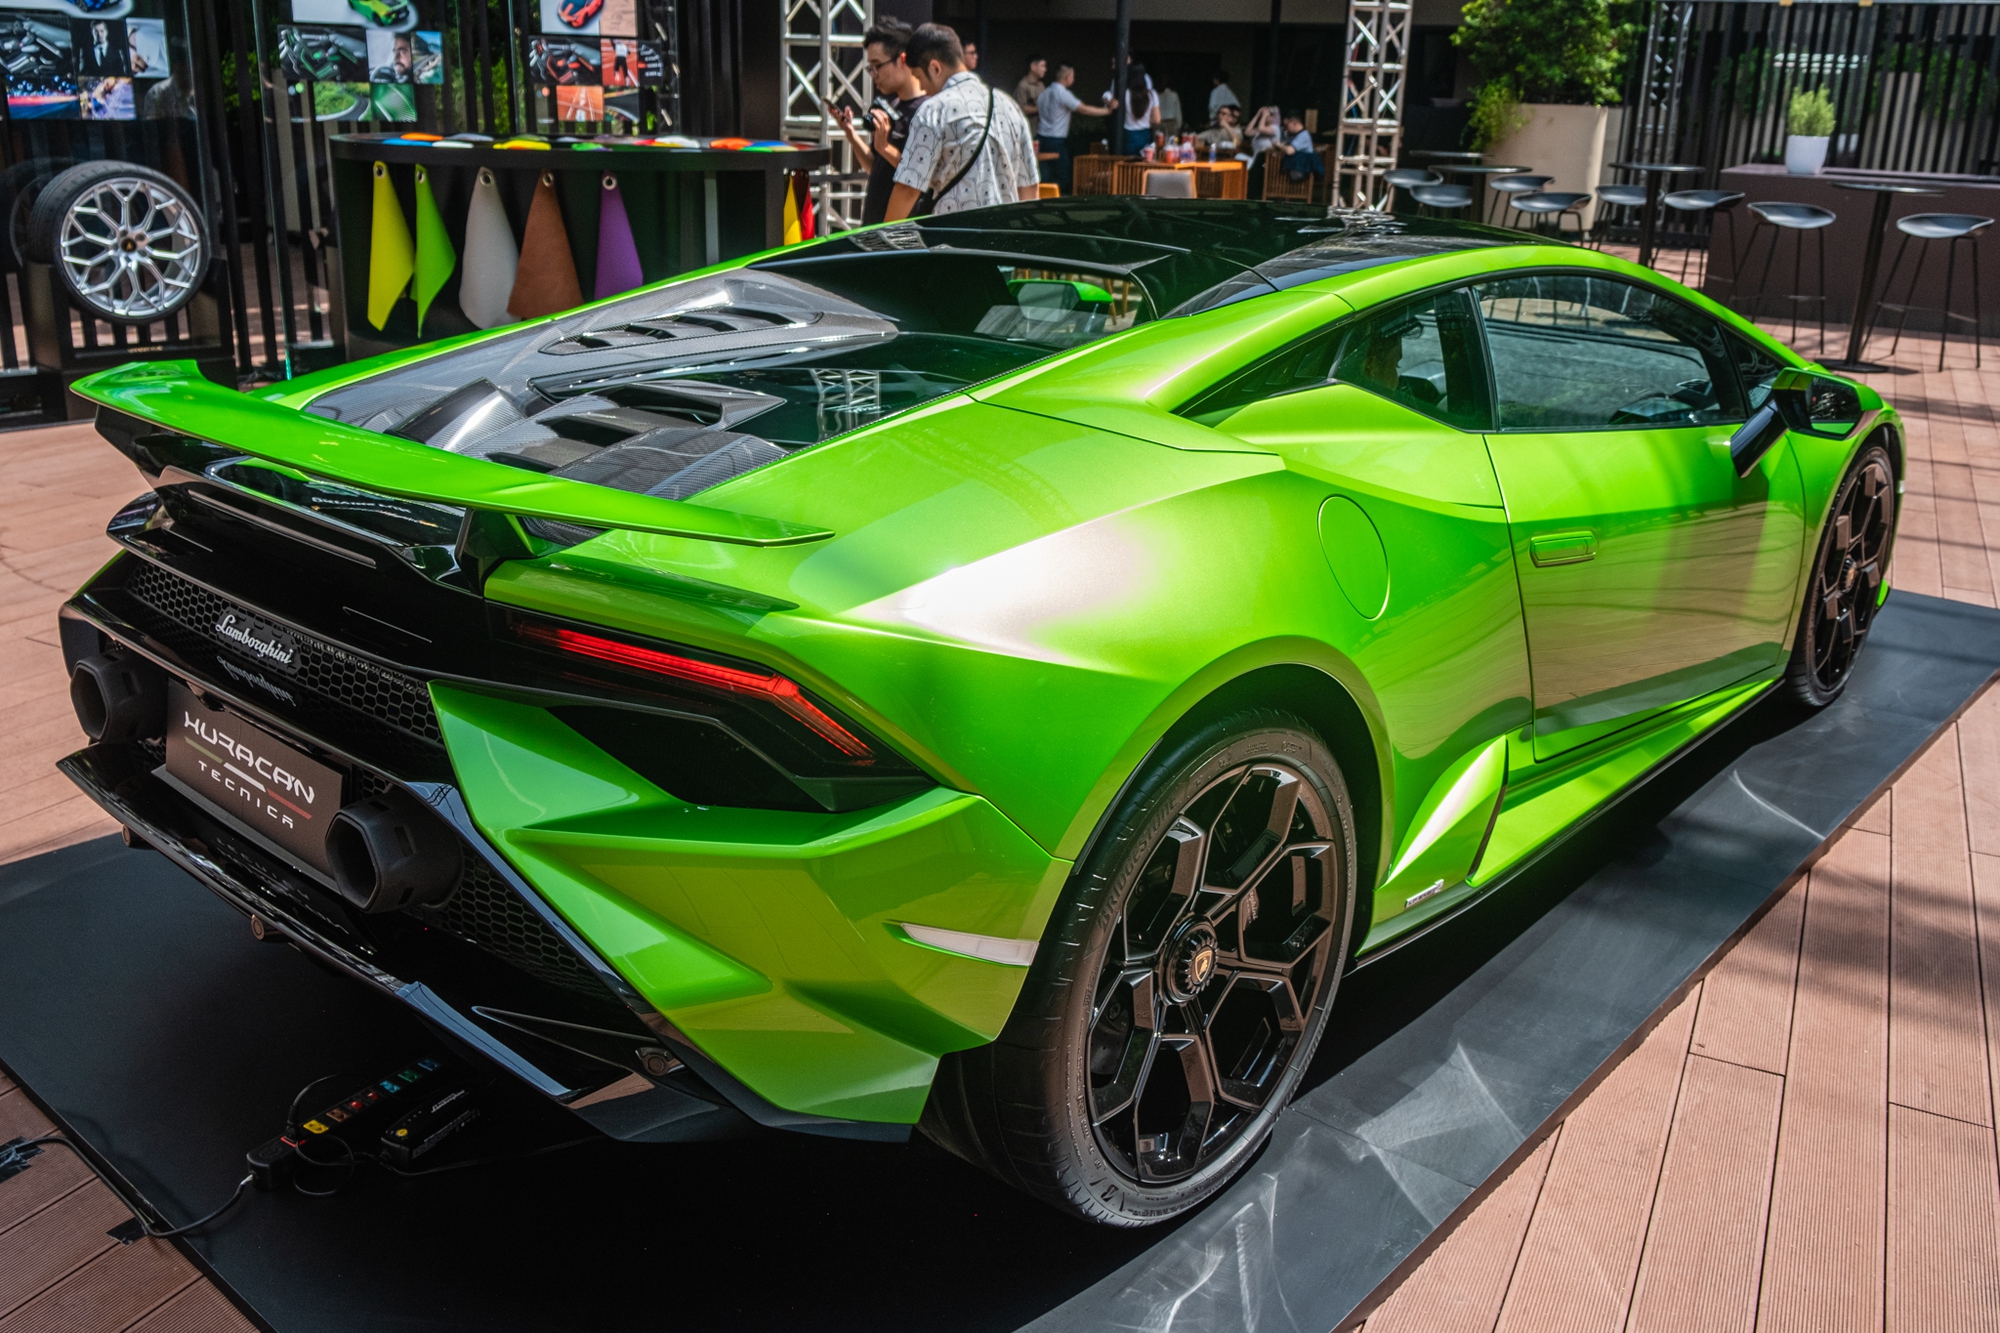 Chi tiết Lamborghini Huracan Tecnica giá từ 19 tỷ đồng tại Việt Nam - Ảnh 5.